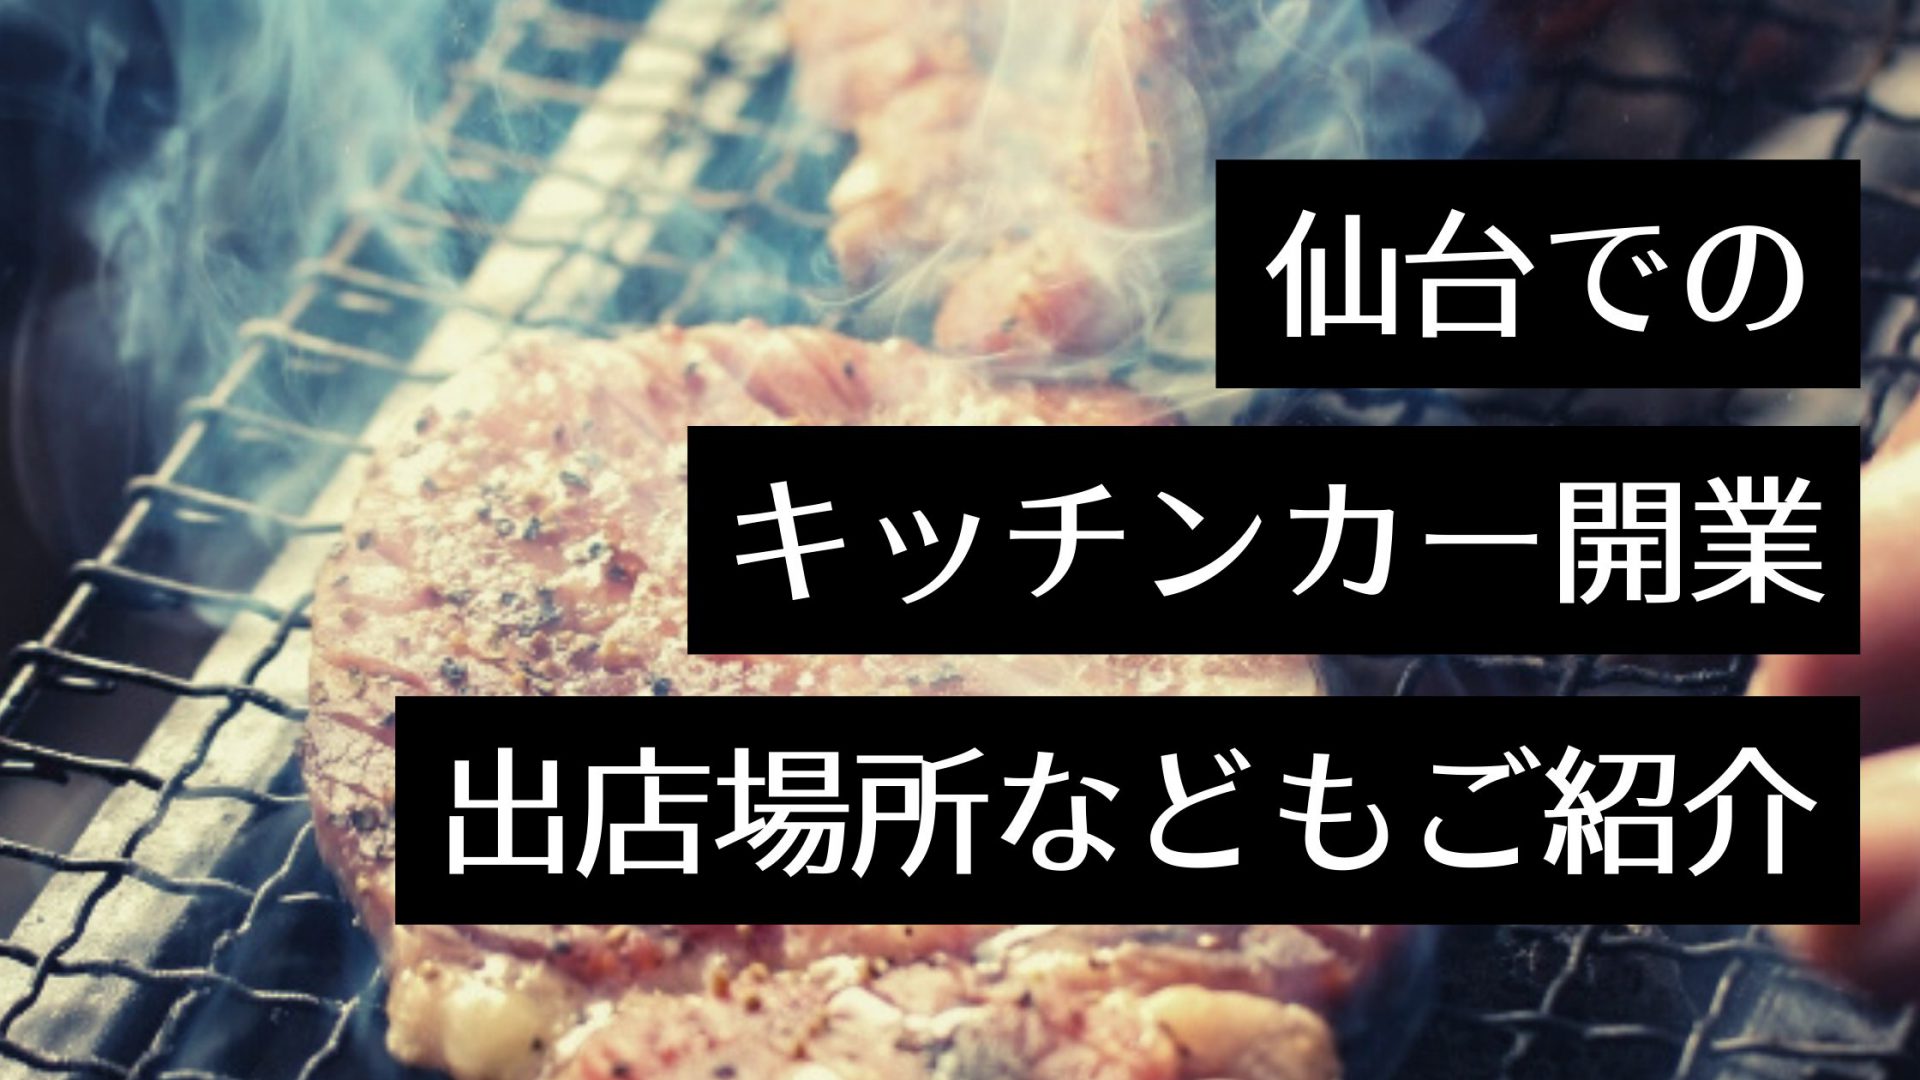 【仙台でキッチンカーを開業したい！】製作会社・出店場所・イベント情報をご紹介